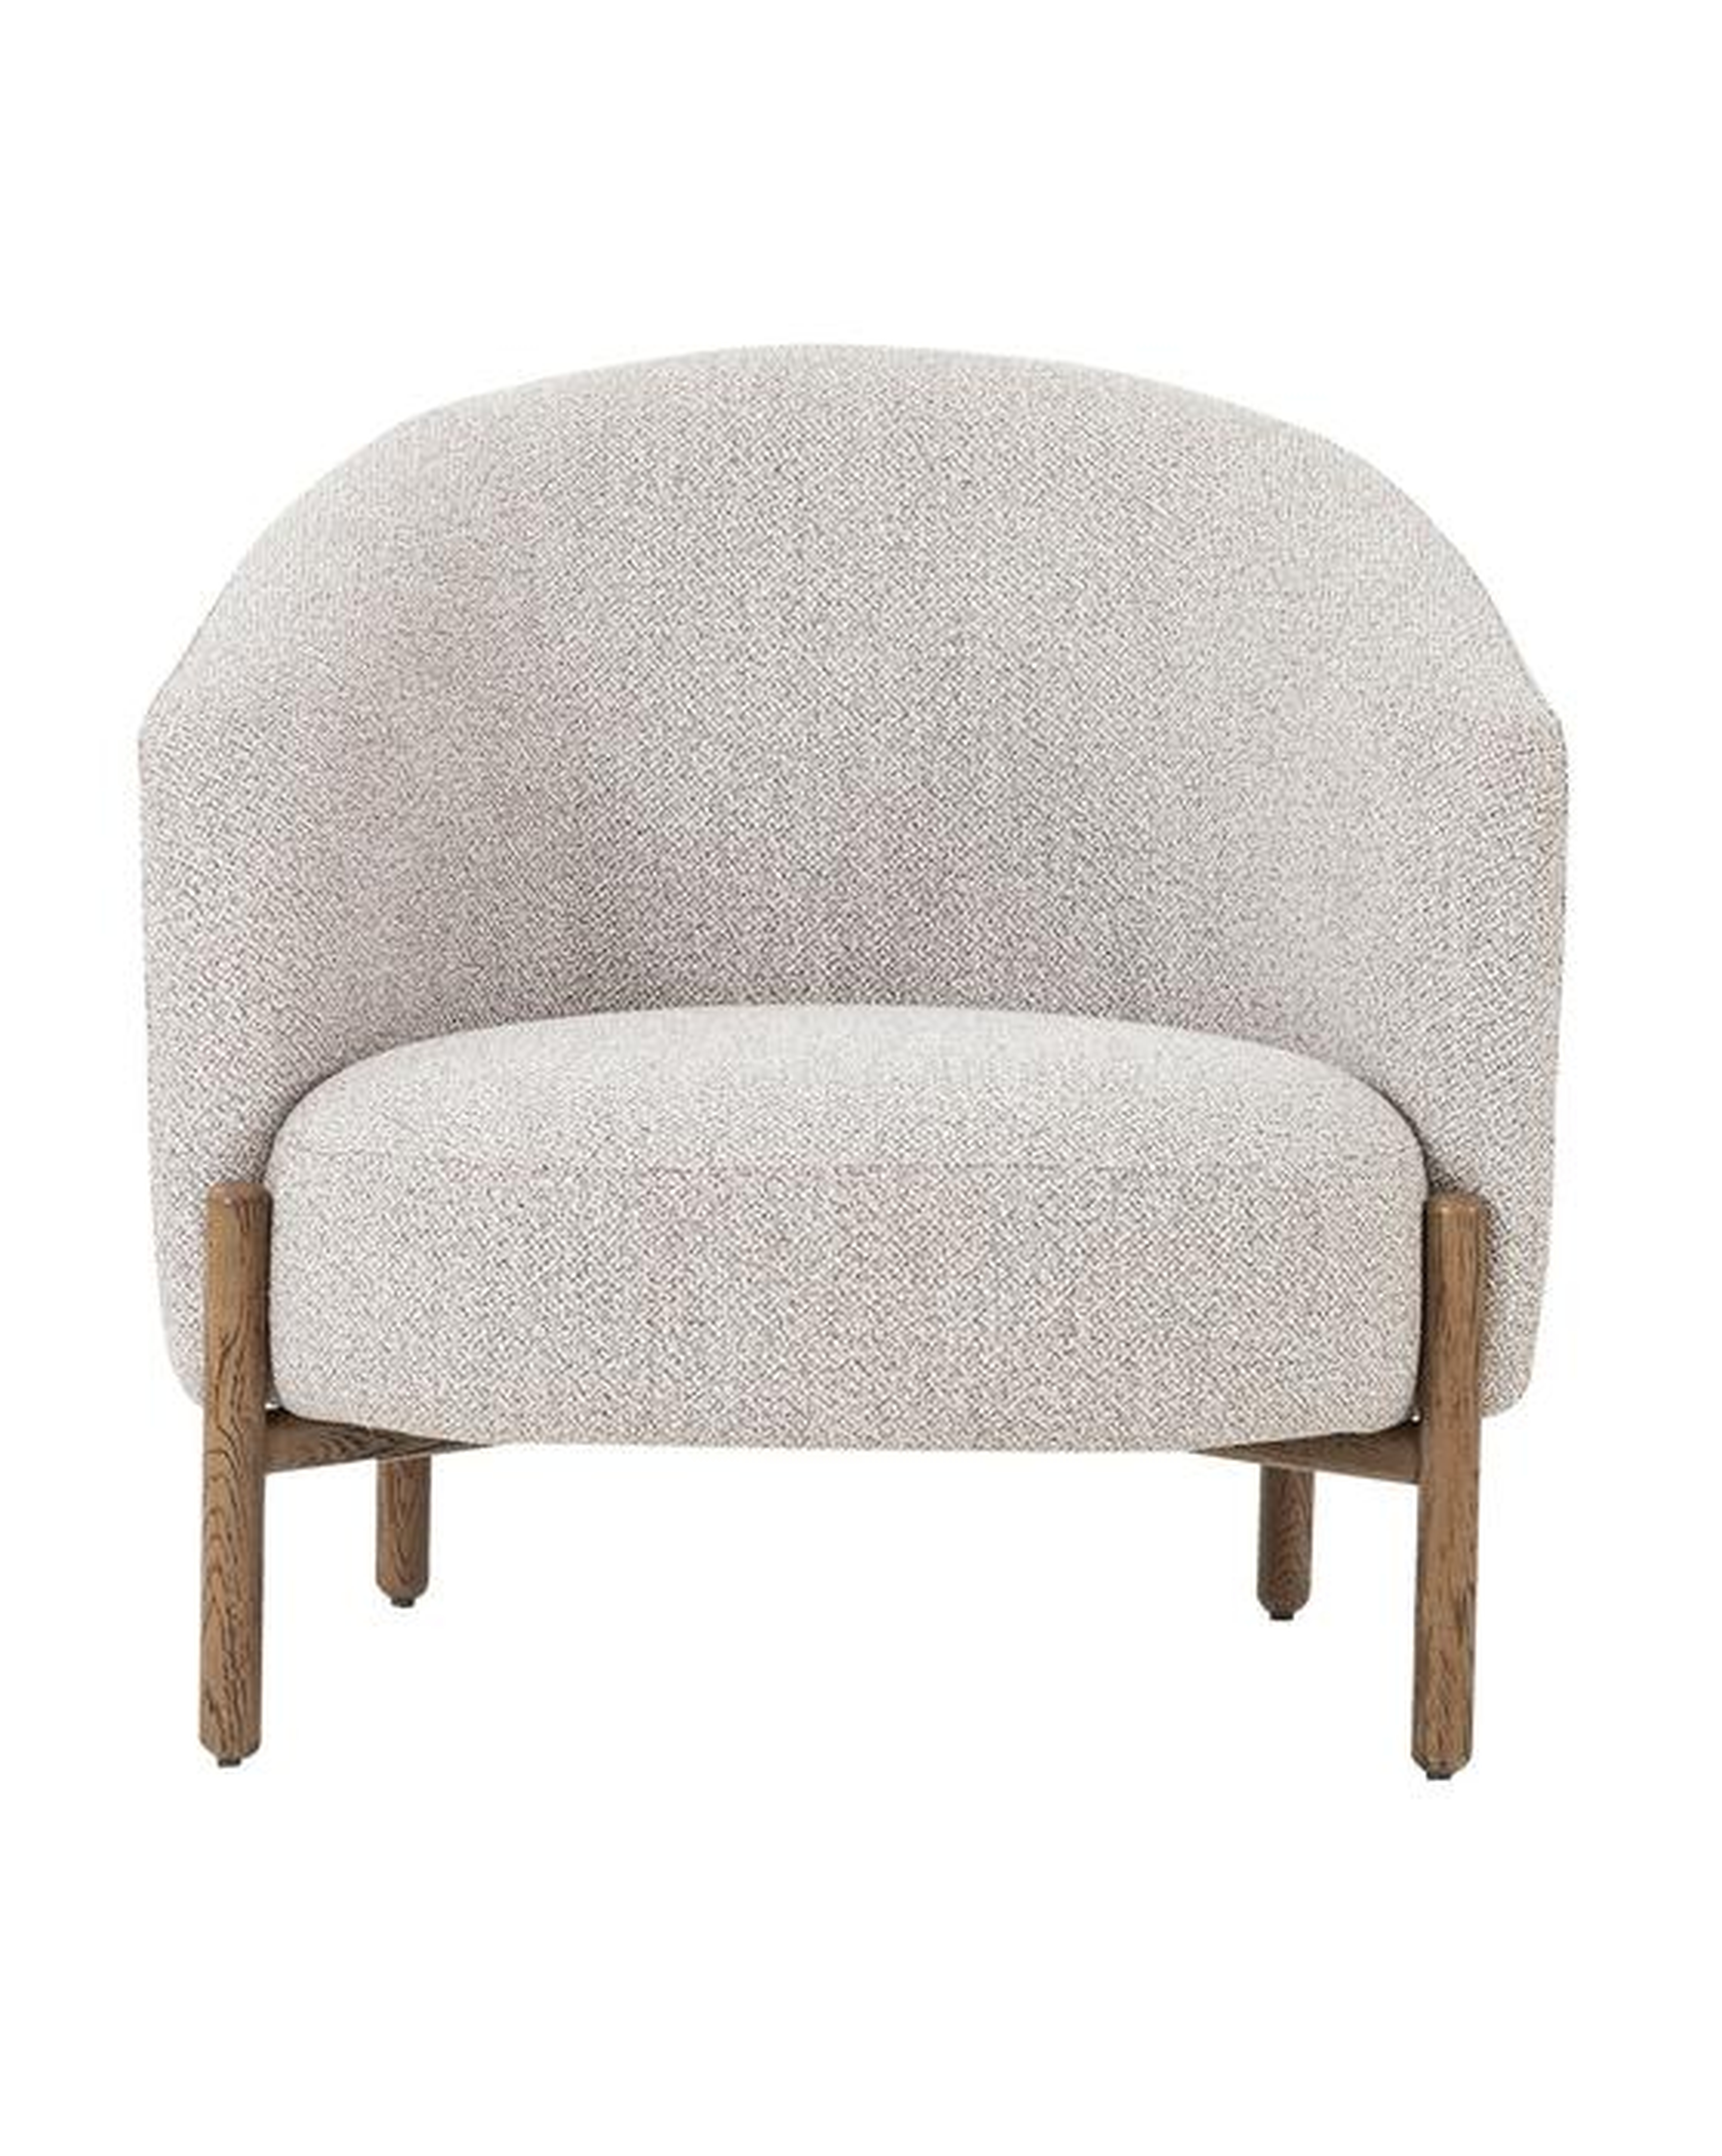 Denham Lounge Chair - McGee & Co.